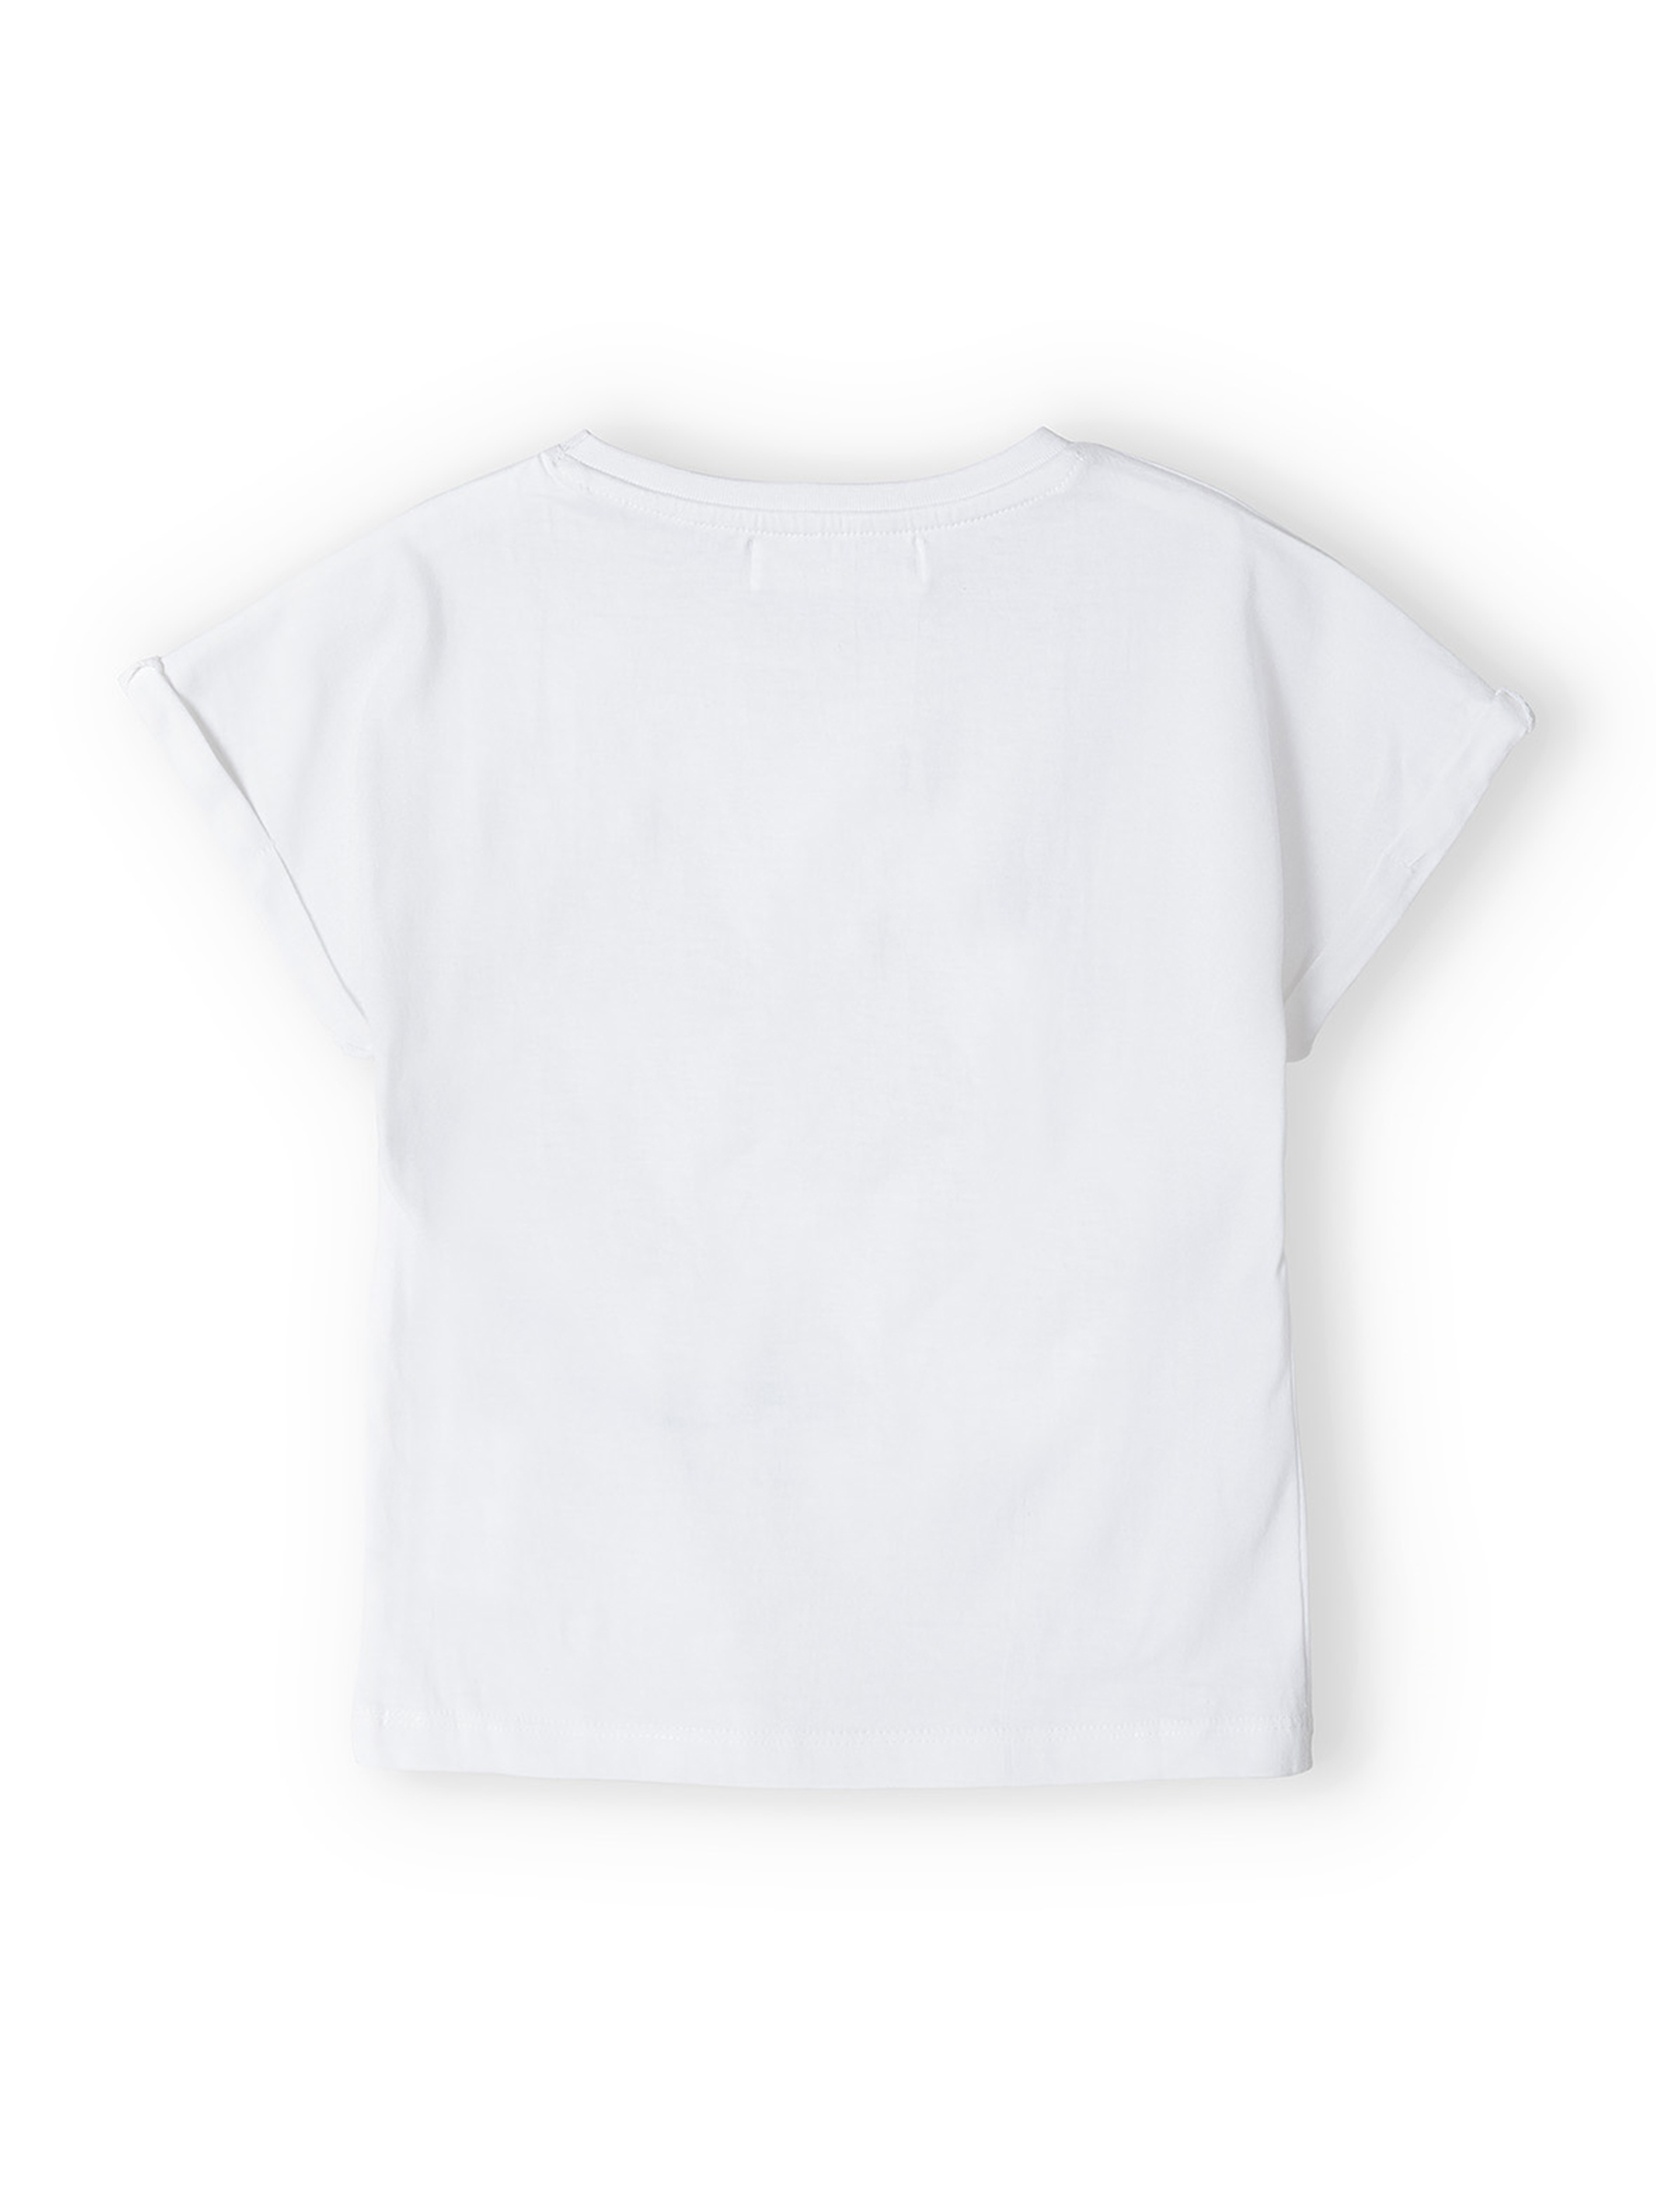 Biała koszulka dla dziewczynki bawełniana z nadrukiem palm